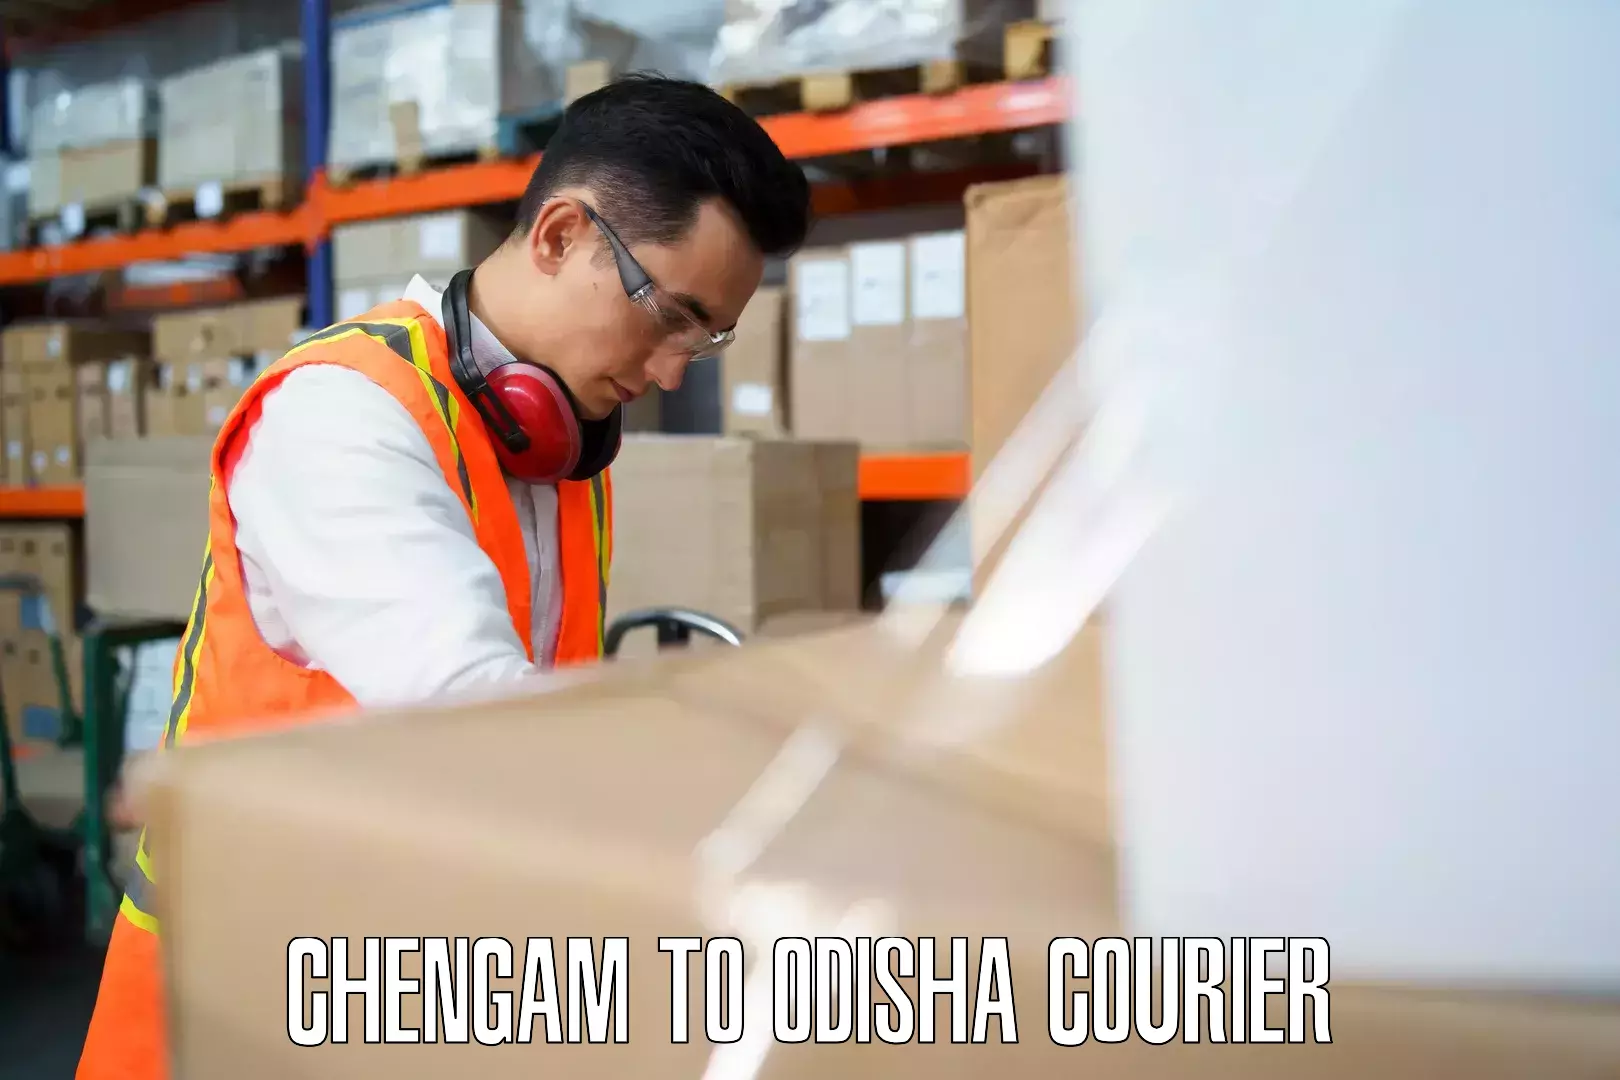 Luggage shipment processing Chengam to Kupari